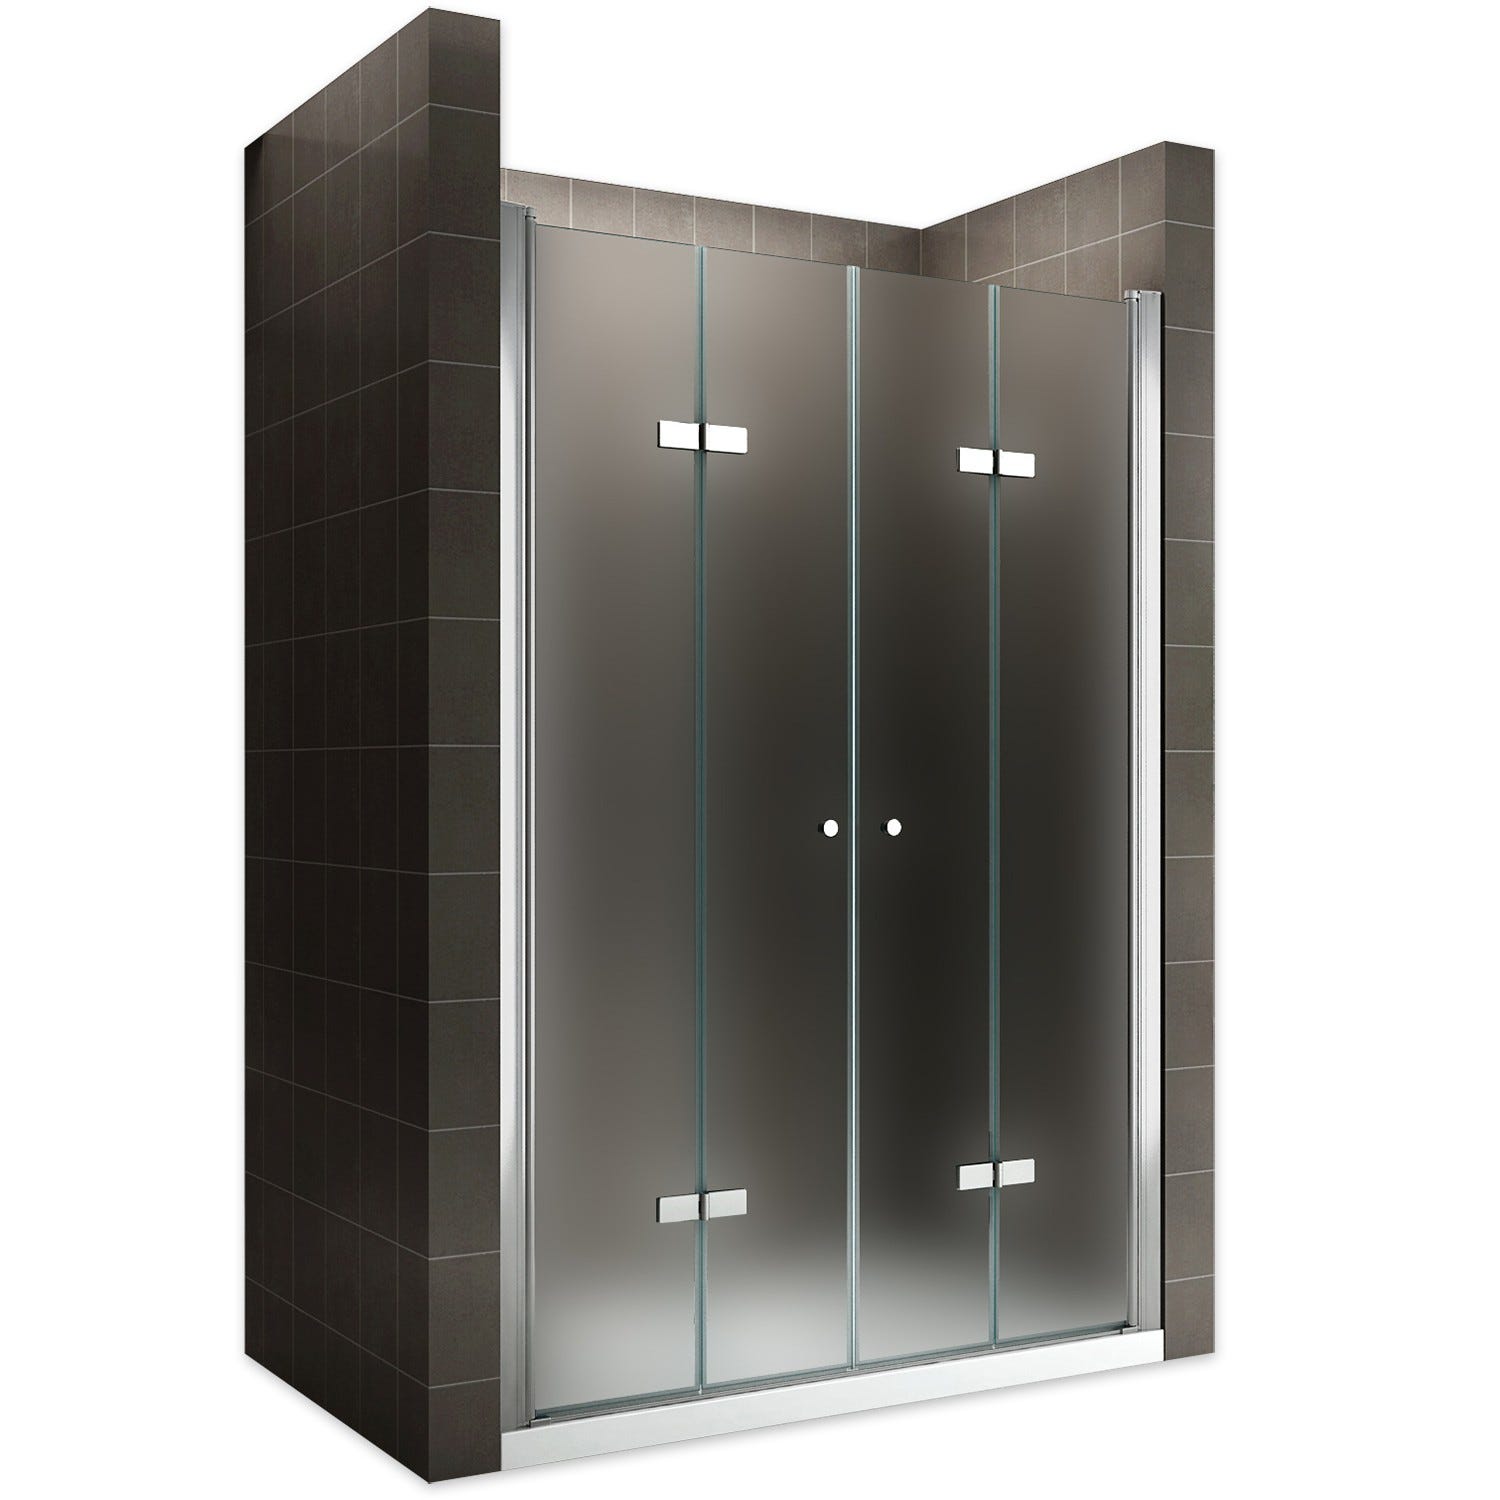 EMMY Porte de douche pliante pivotante H 185 cm largeur réglable 148 à 152 cm verre opaque 0